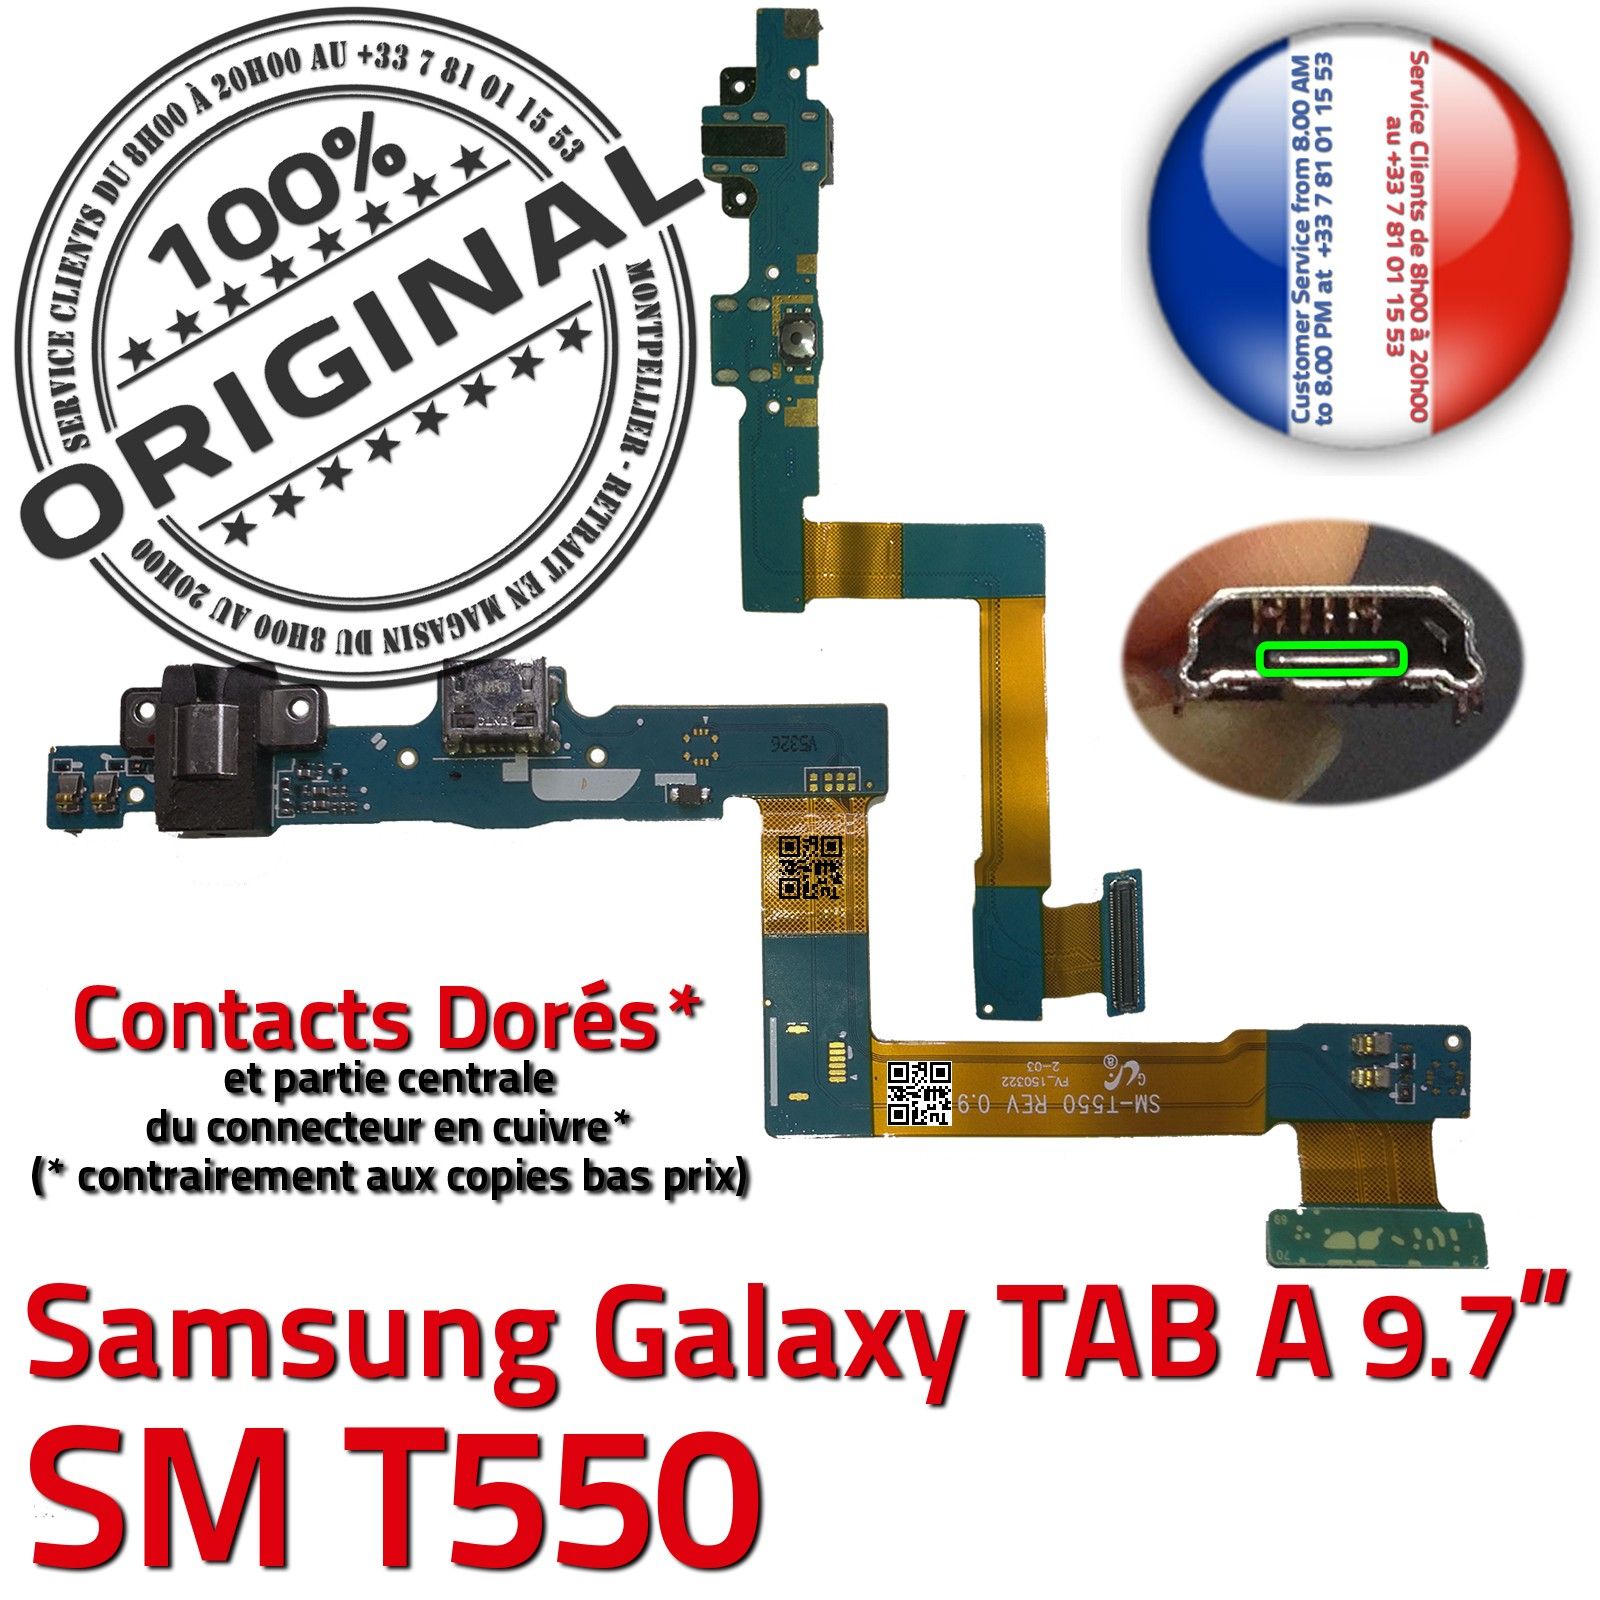 ORIGINAL Samsung Galaxy TAB A SM T550 Connecteur de Charge Chargeur Nappe Flex OFFICIELLE Réparation Haut Parleur Bouton HOME